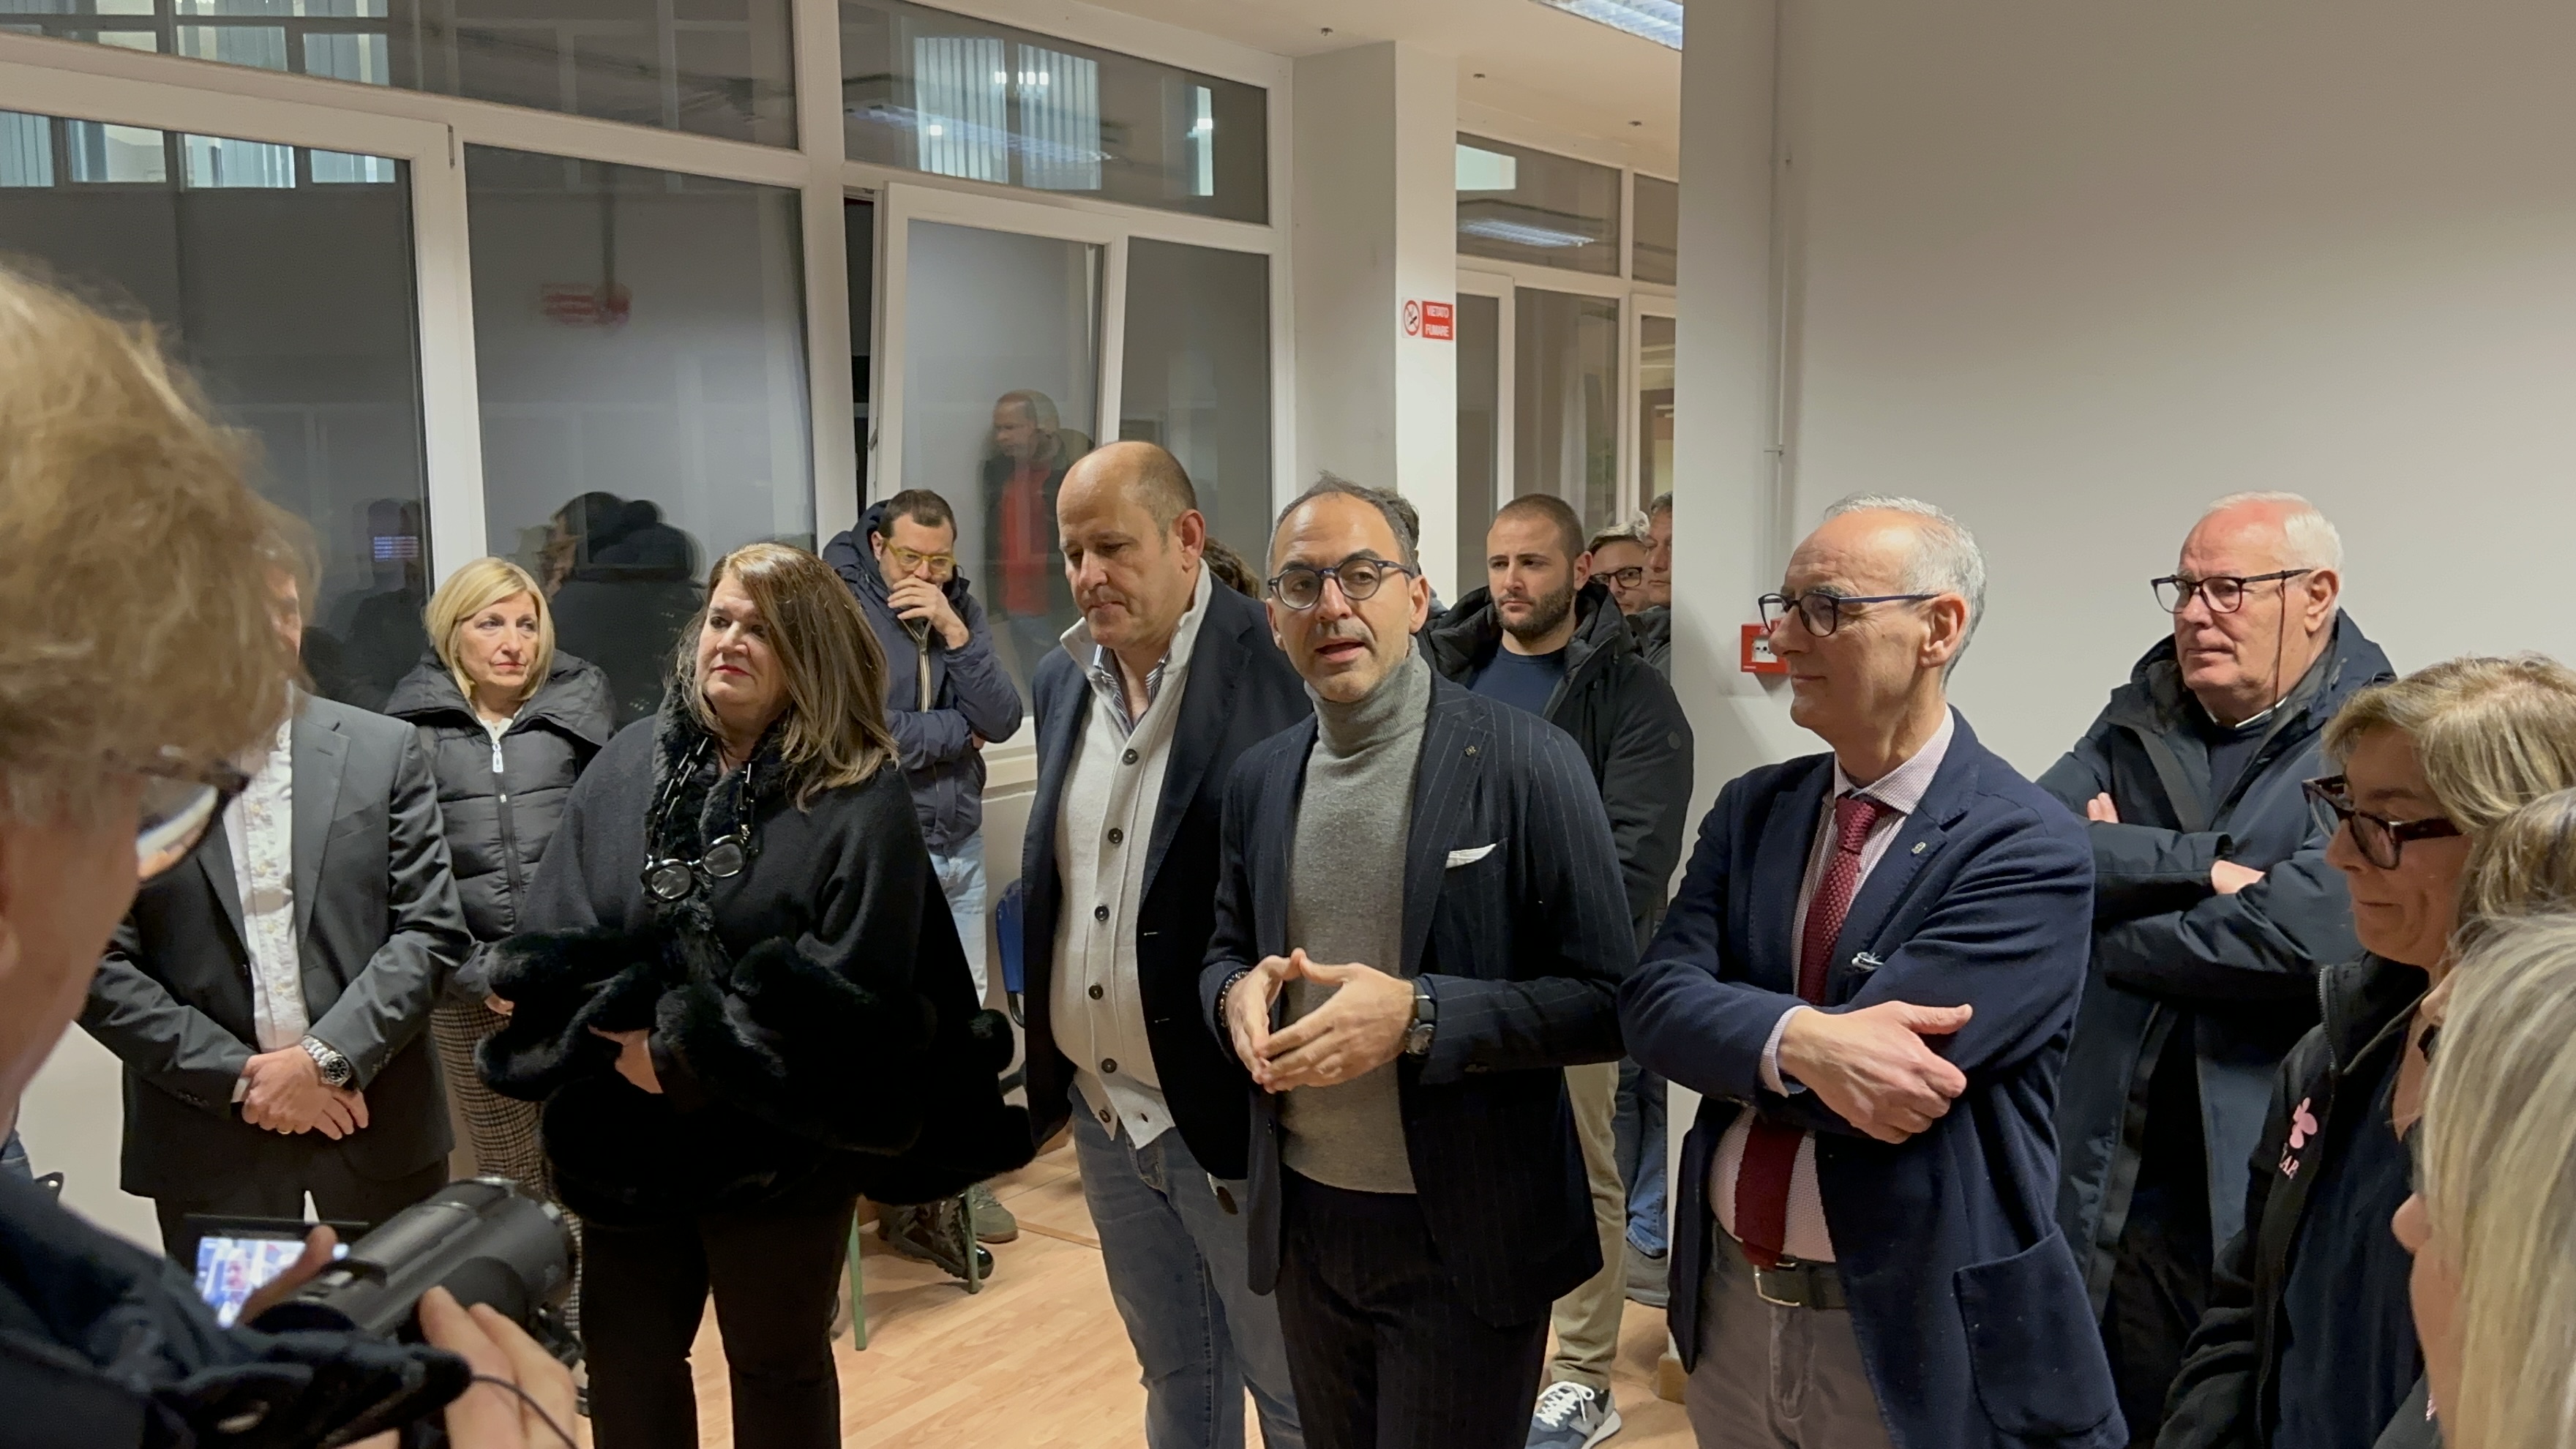 Galleria Nasce il primo ambulatorio per stomizzati in provincia di Foggia - Diapositiva 1 di 5